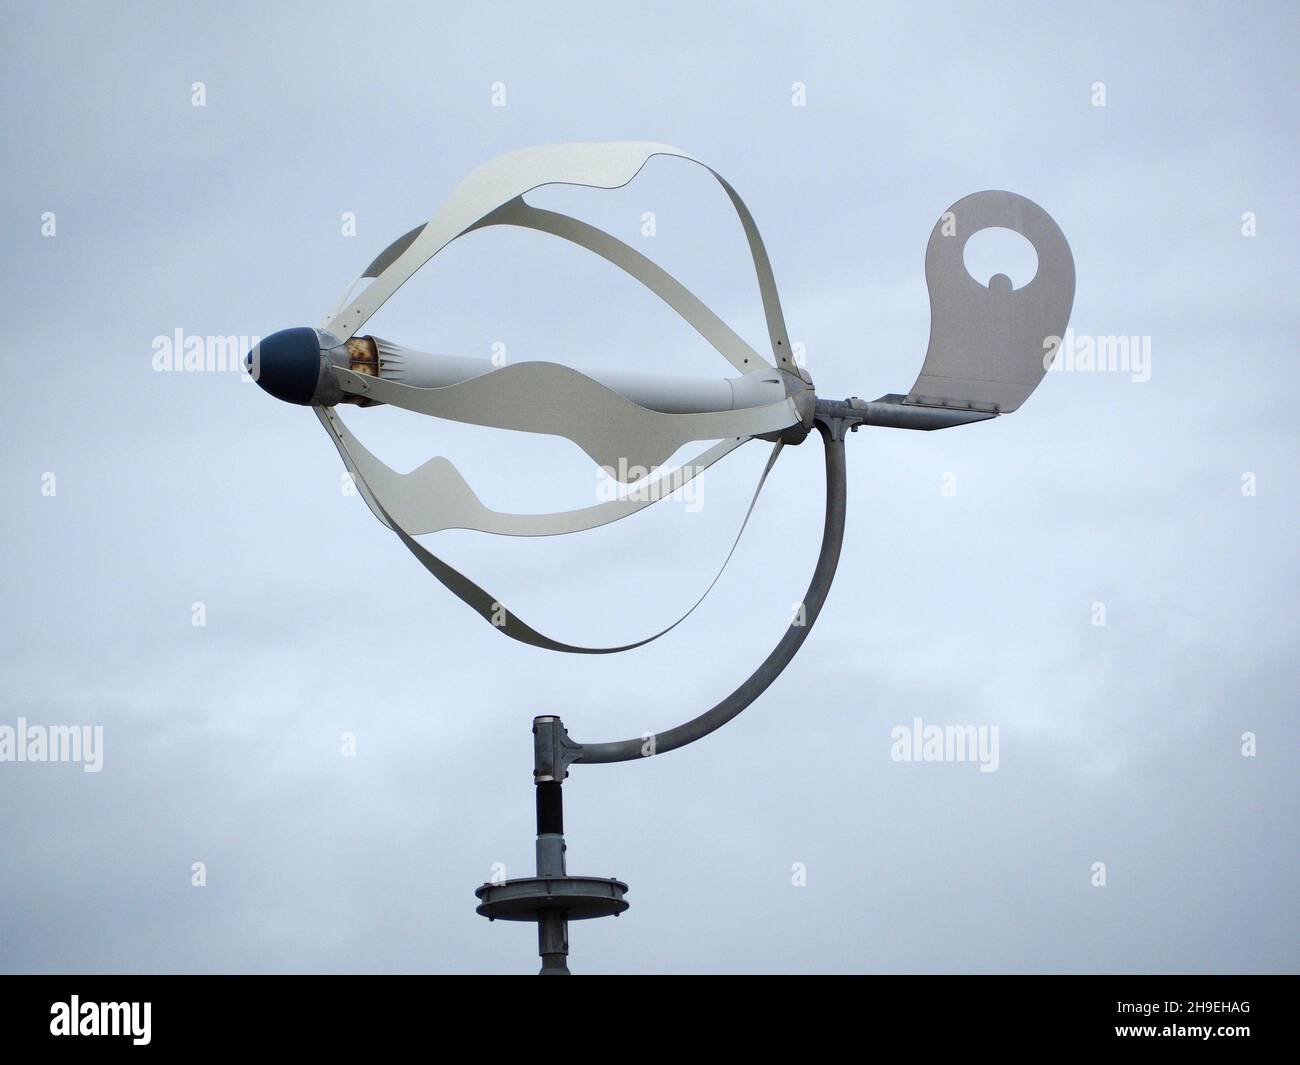 Petite éolienne de conception intéressante montée sur un poteau.Vlieland, Frise, pays-Bas Banque D'Images